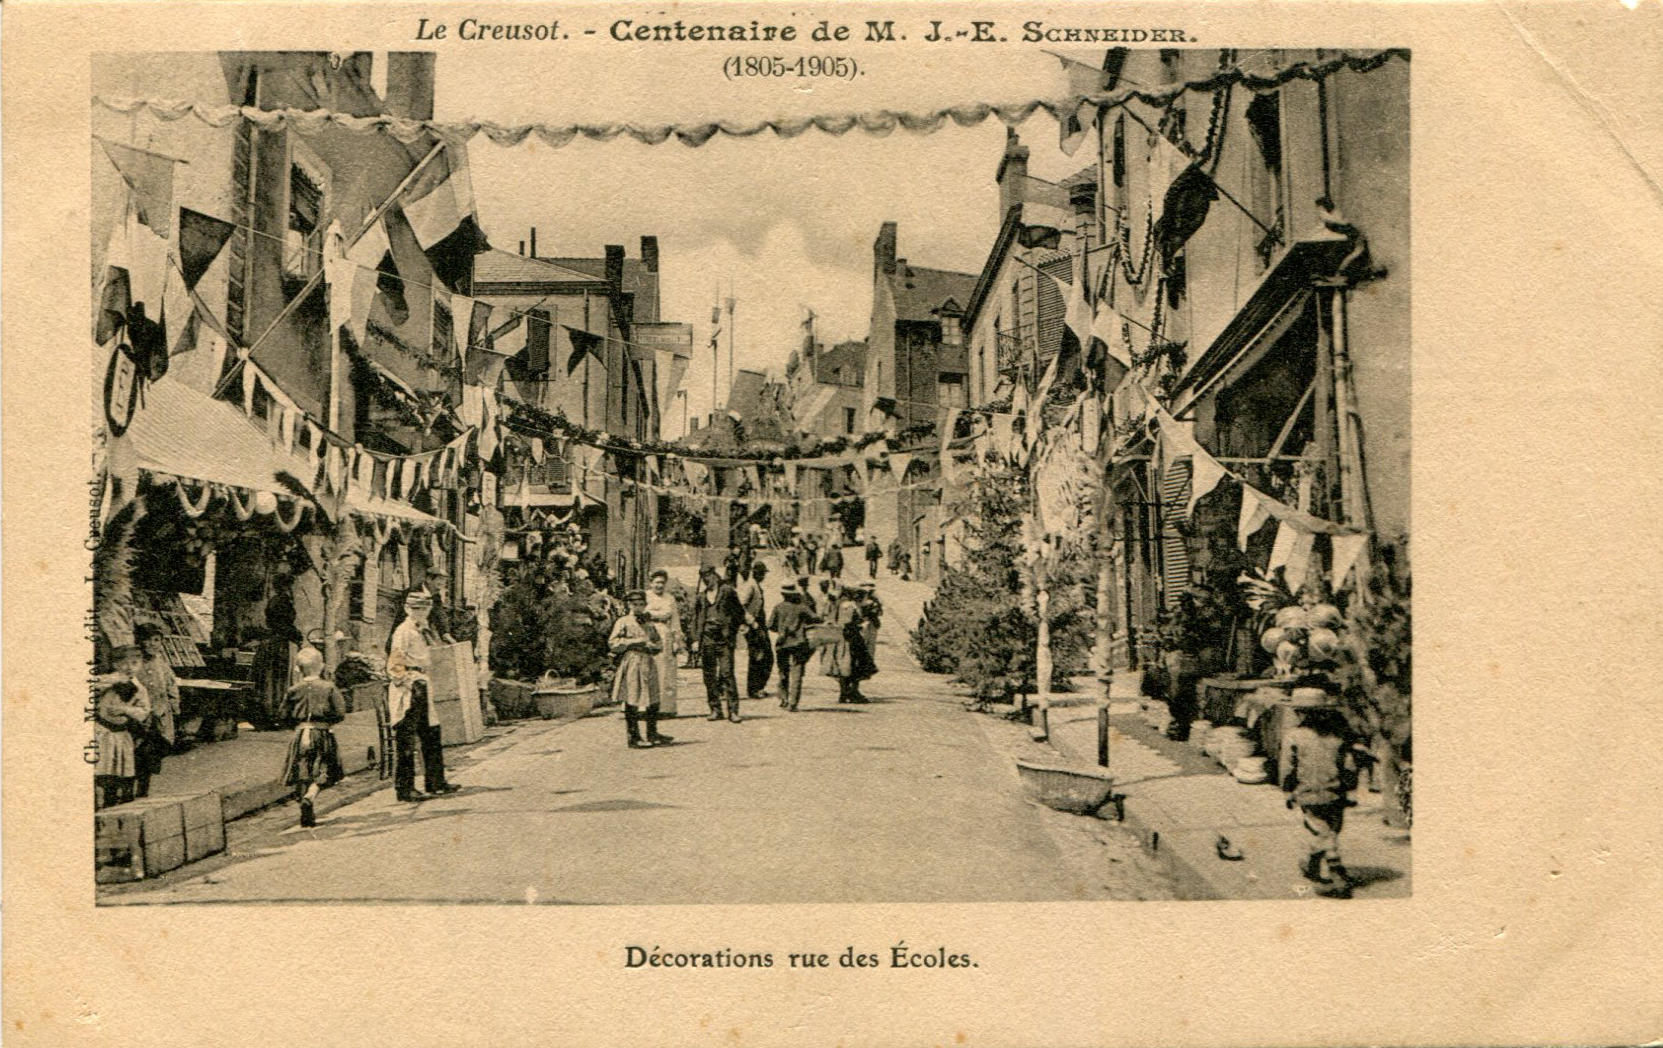 Rue des Écoles